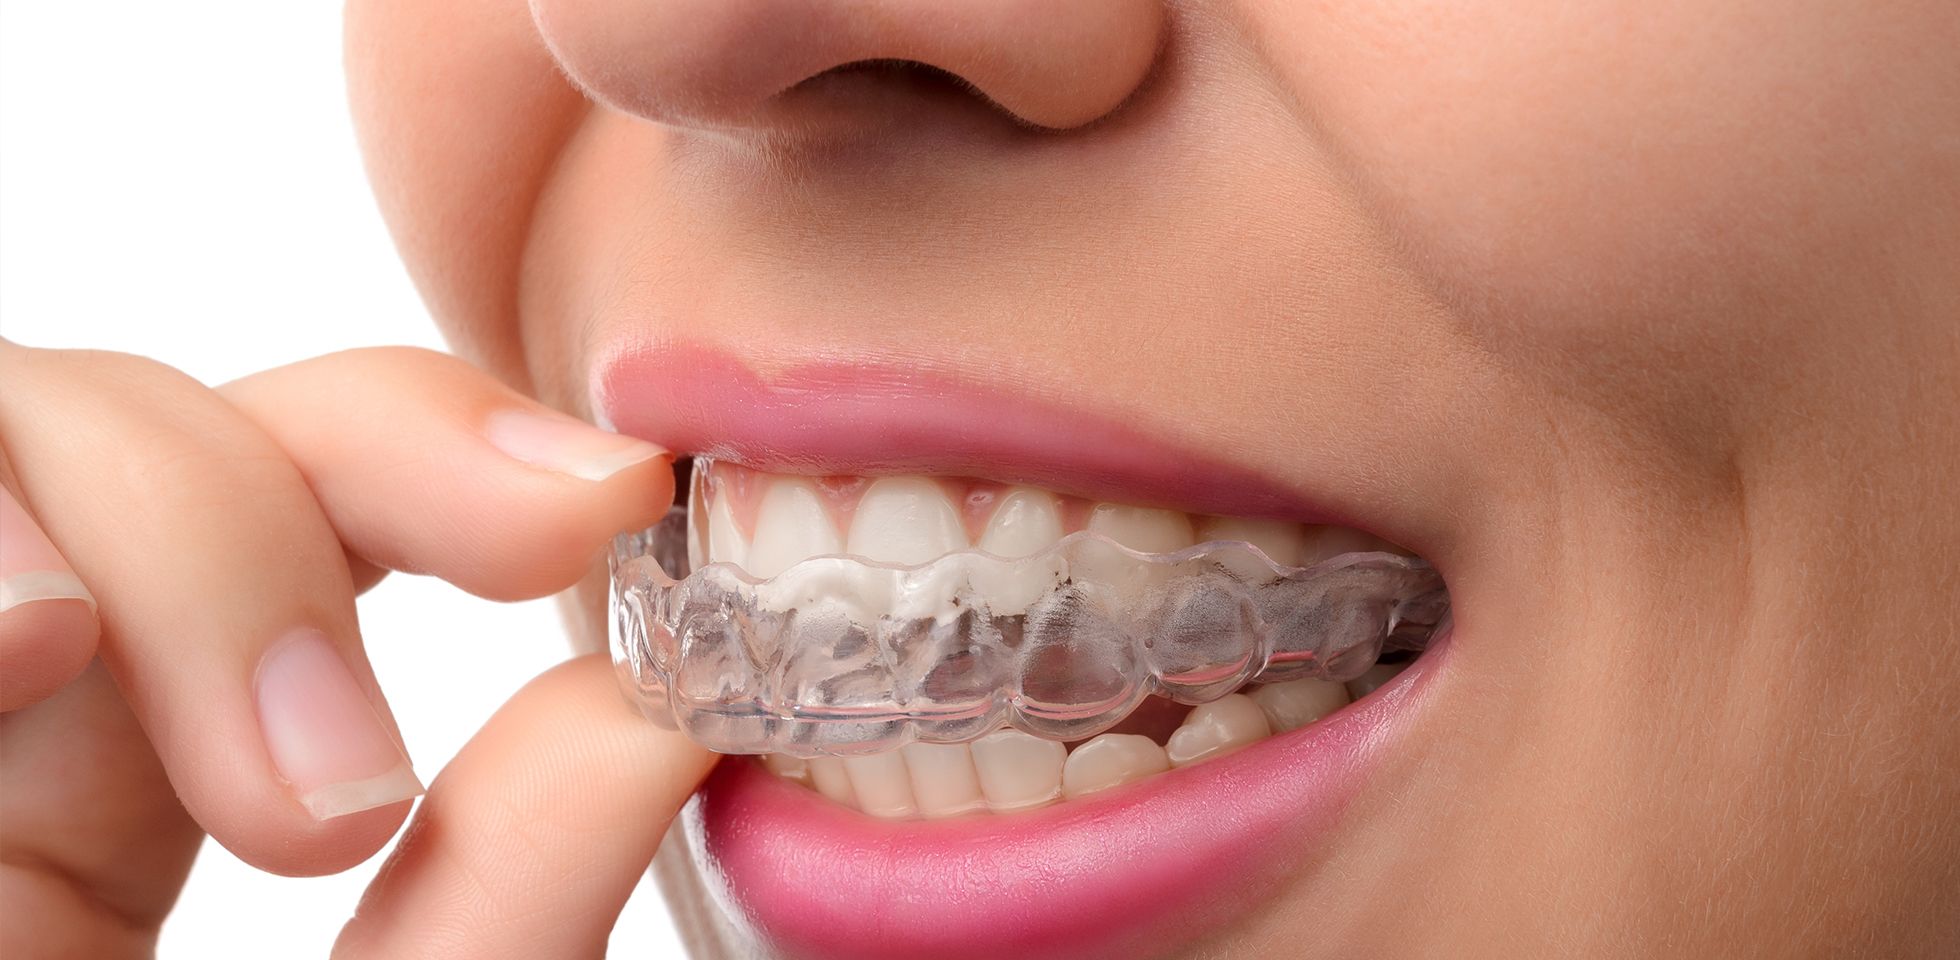 Les gouttières dentaires plébiscitées par les influenceurs ne le sont pas par les professionnels